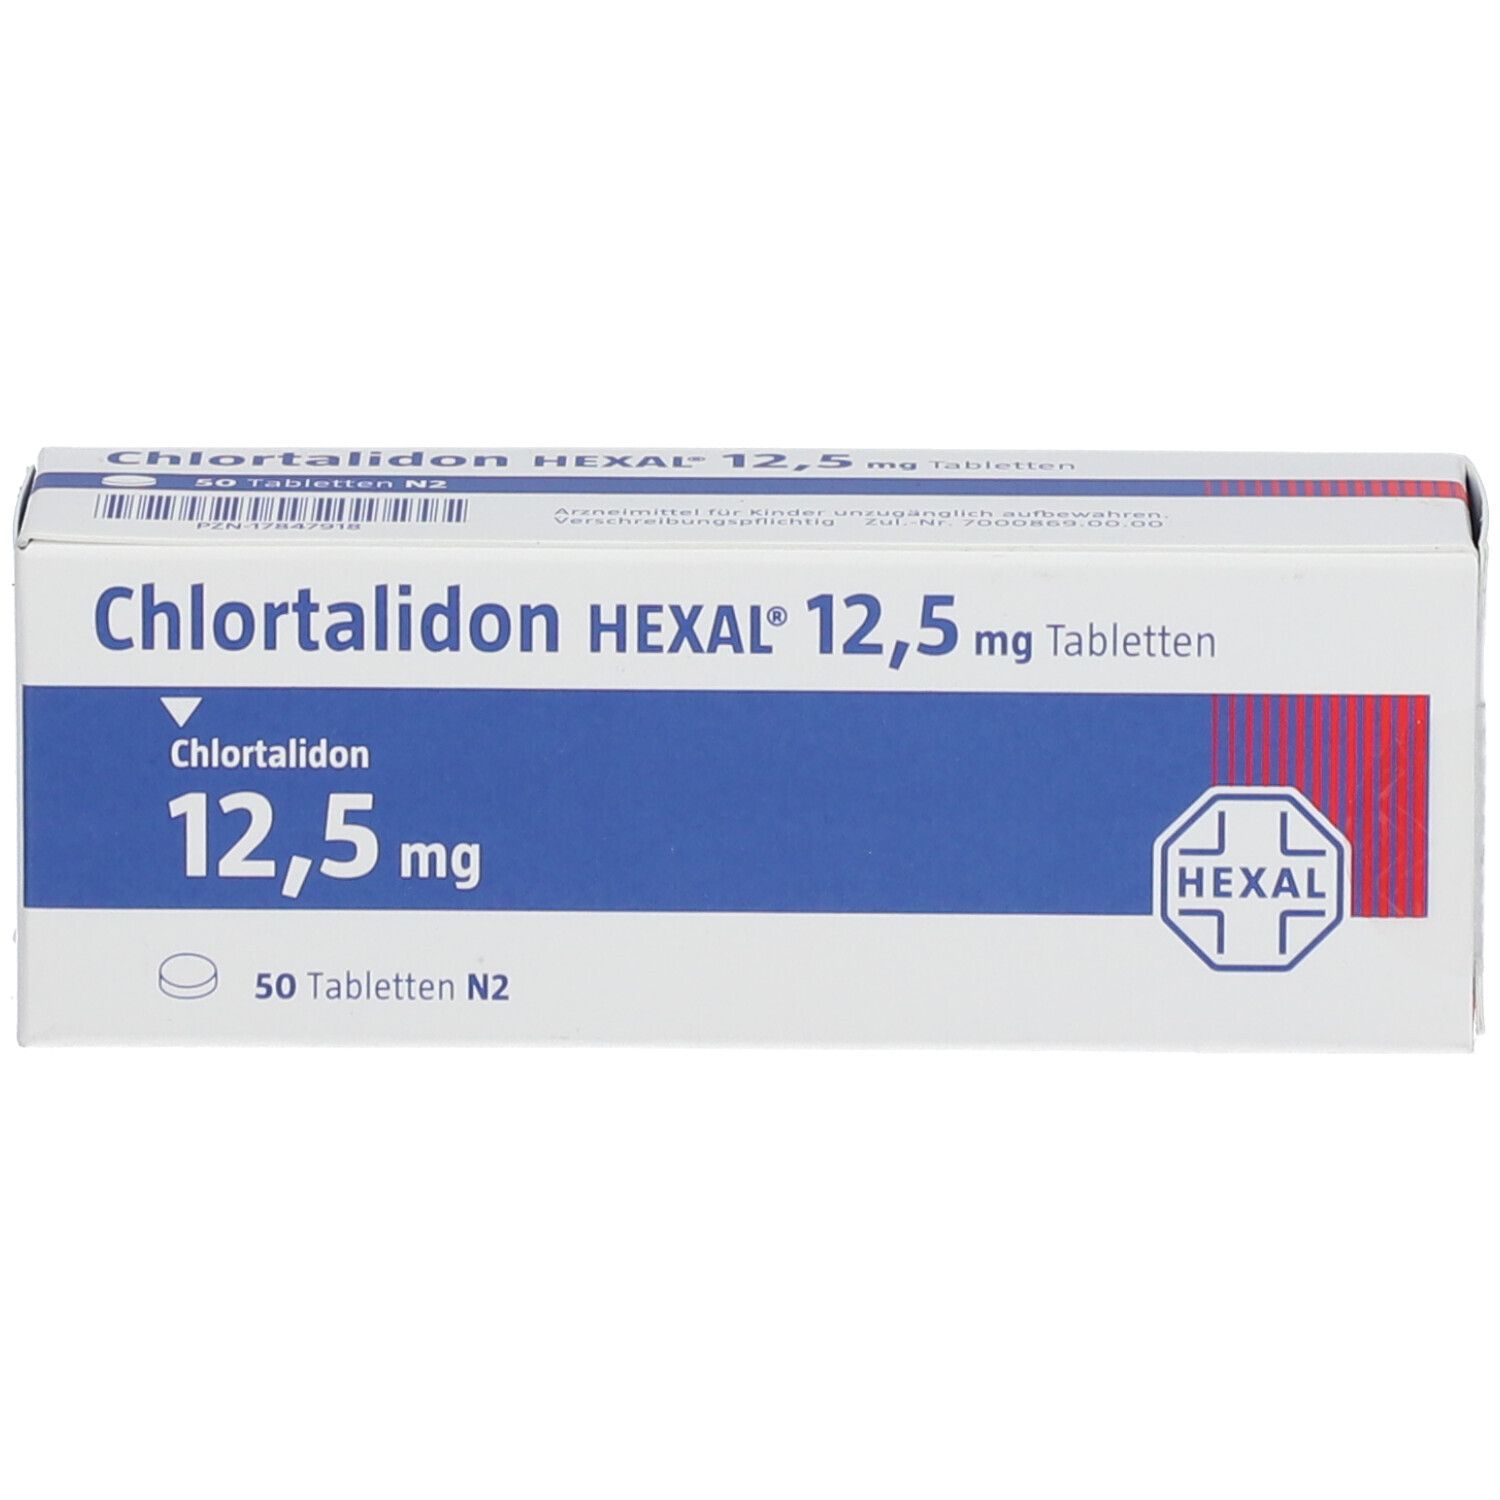 CHLORTALIDON HEXAL 12,5 mg Tabletten